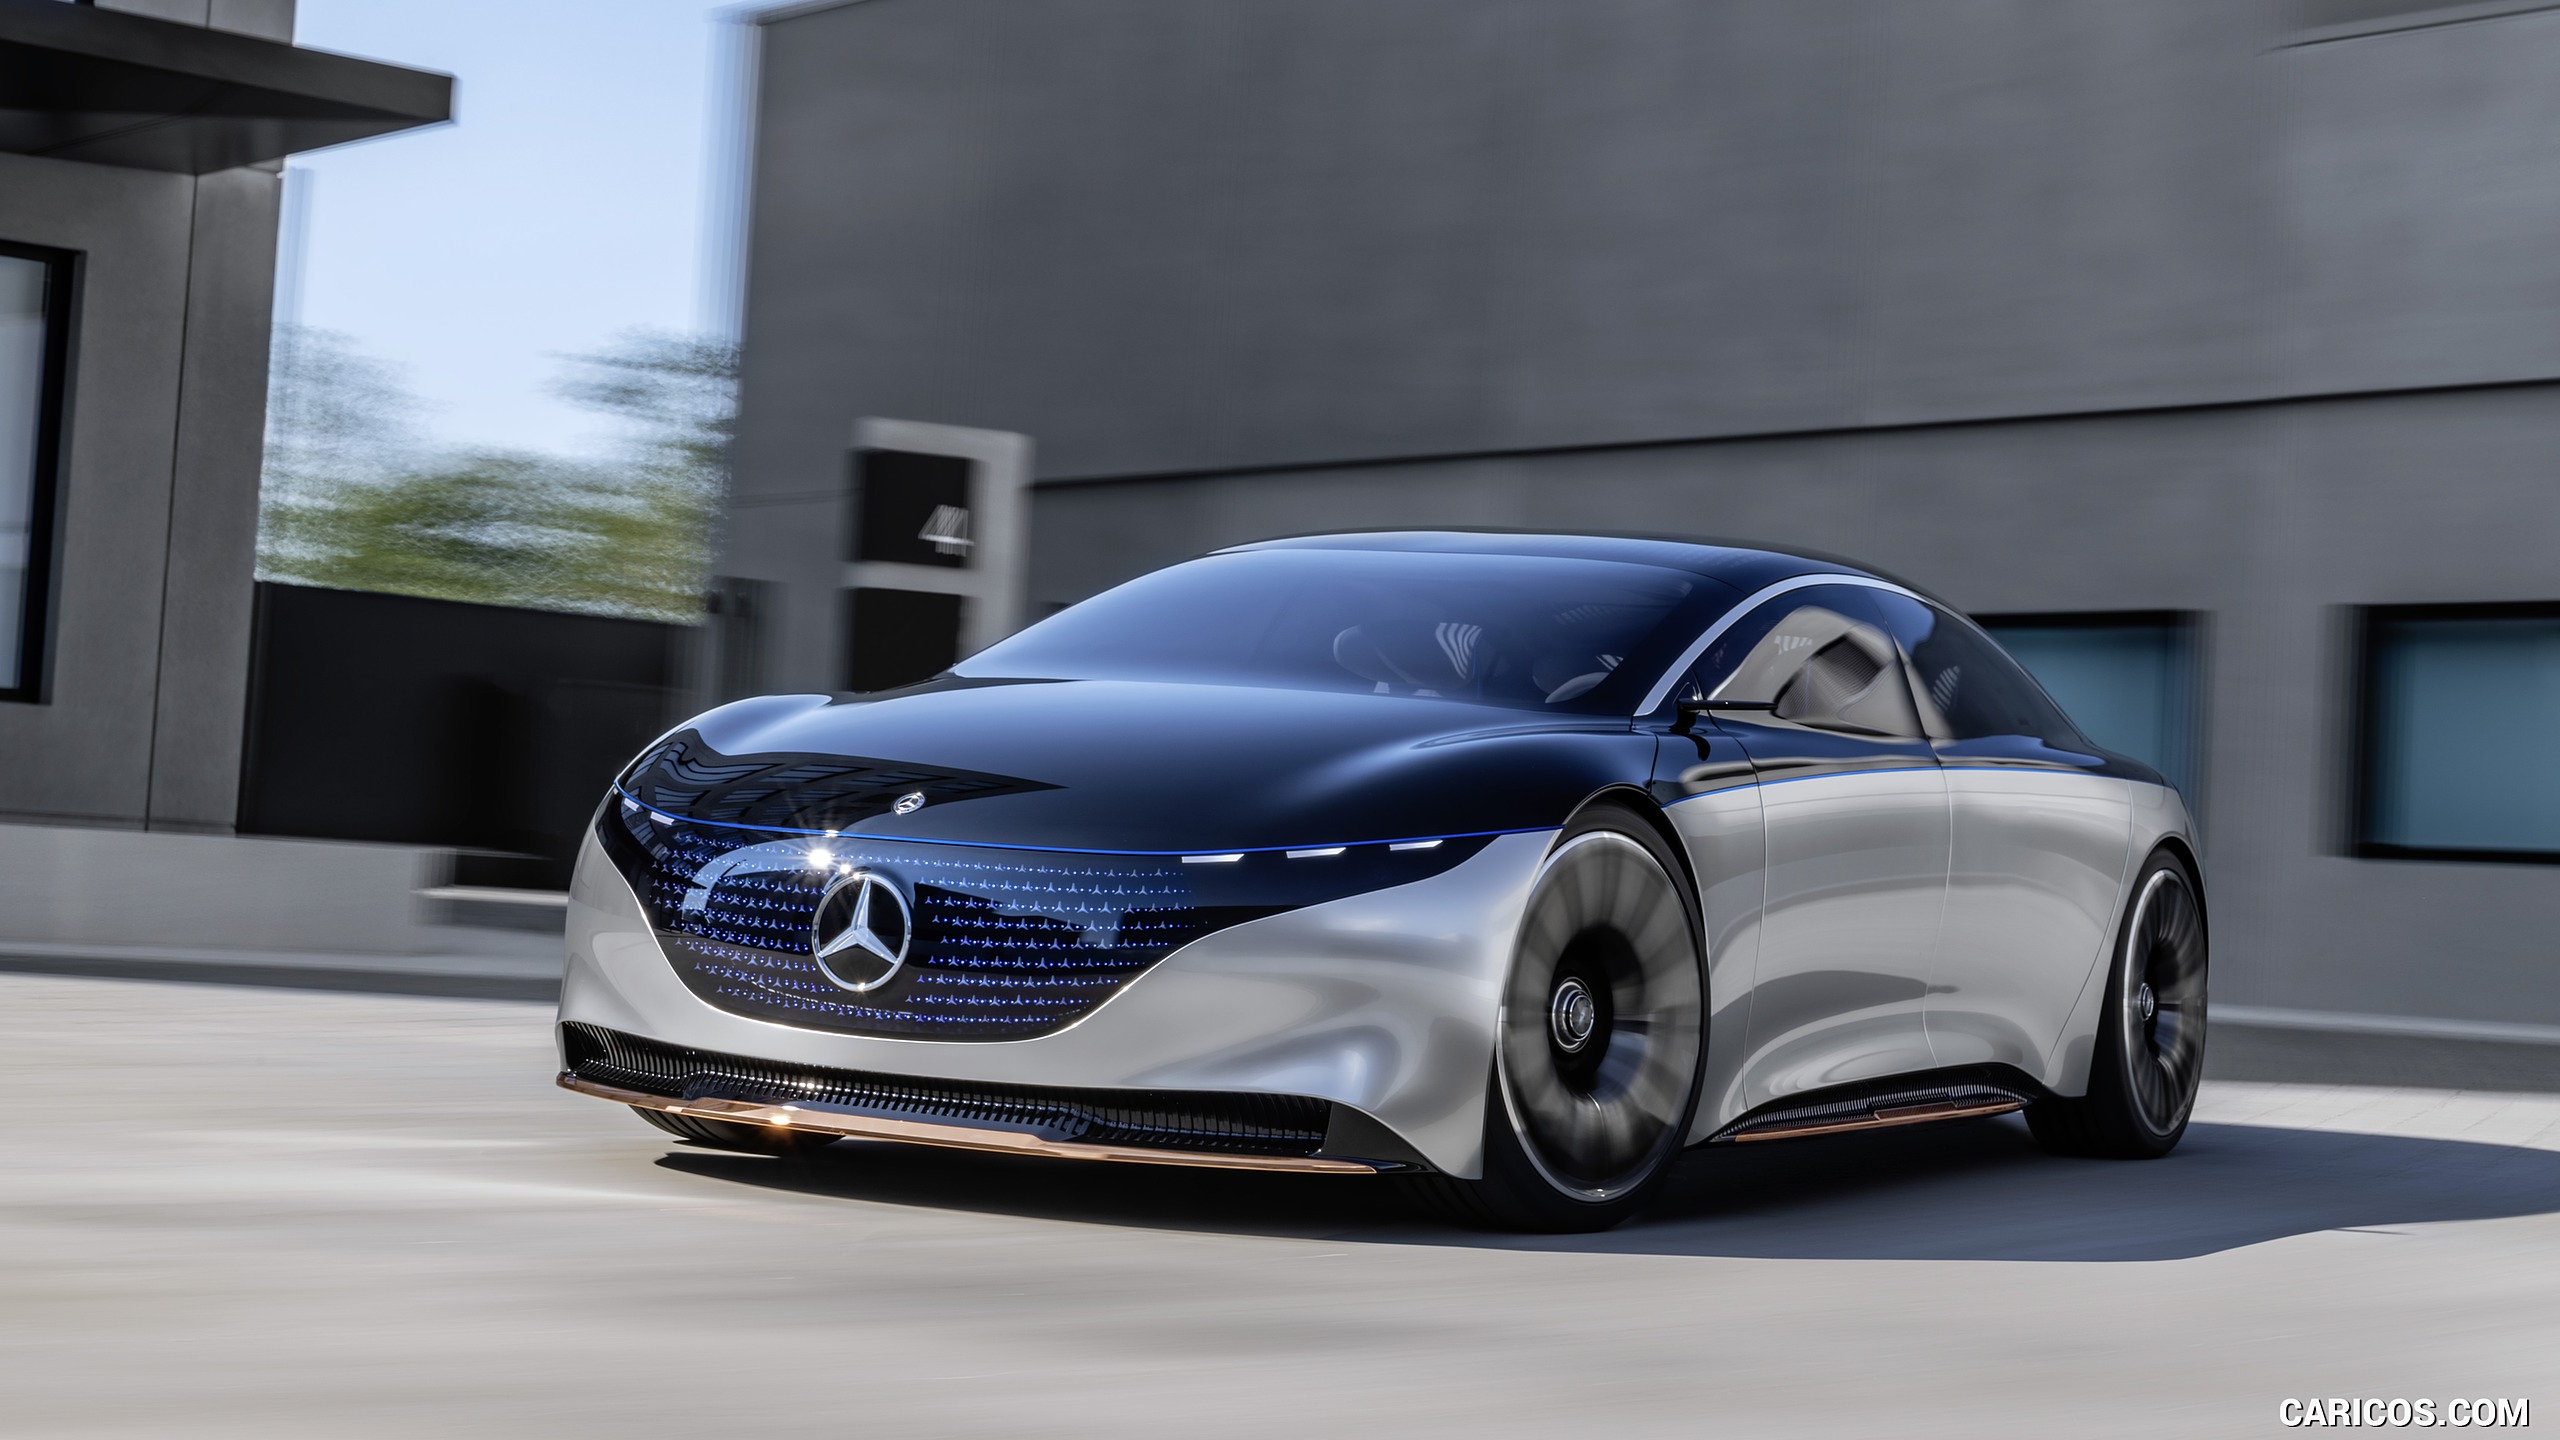 2019 Mercedes-Benz Vision EQS Concept - Front Three-Quarter, #1 of 58